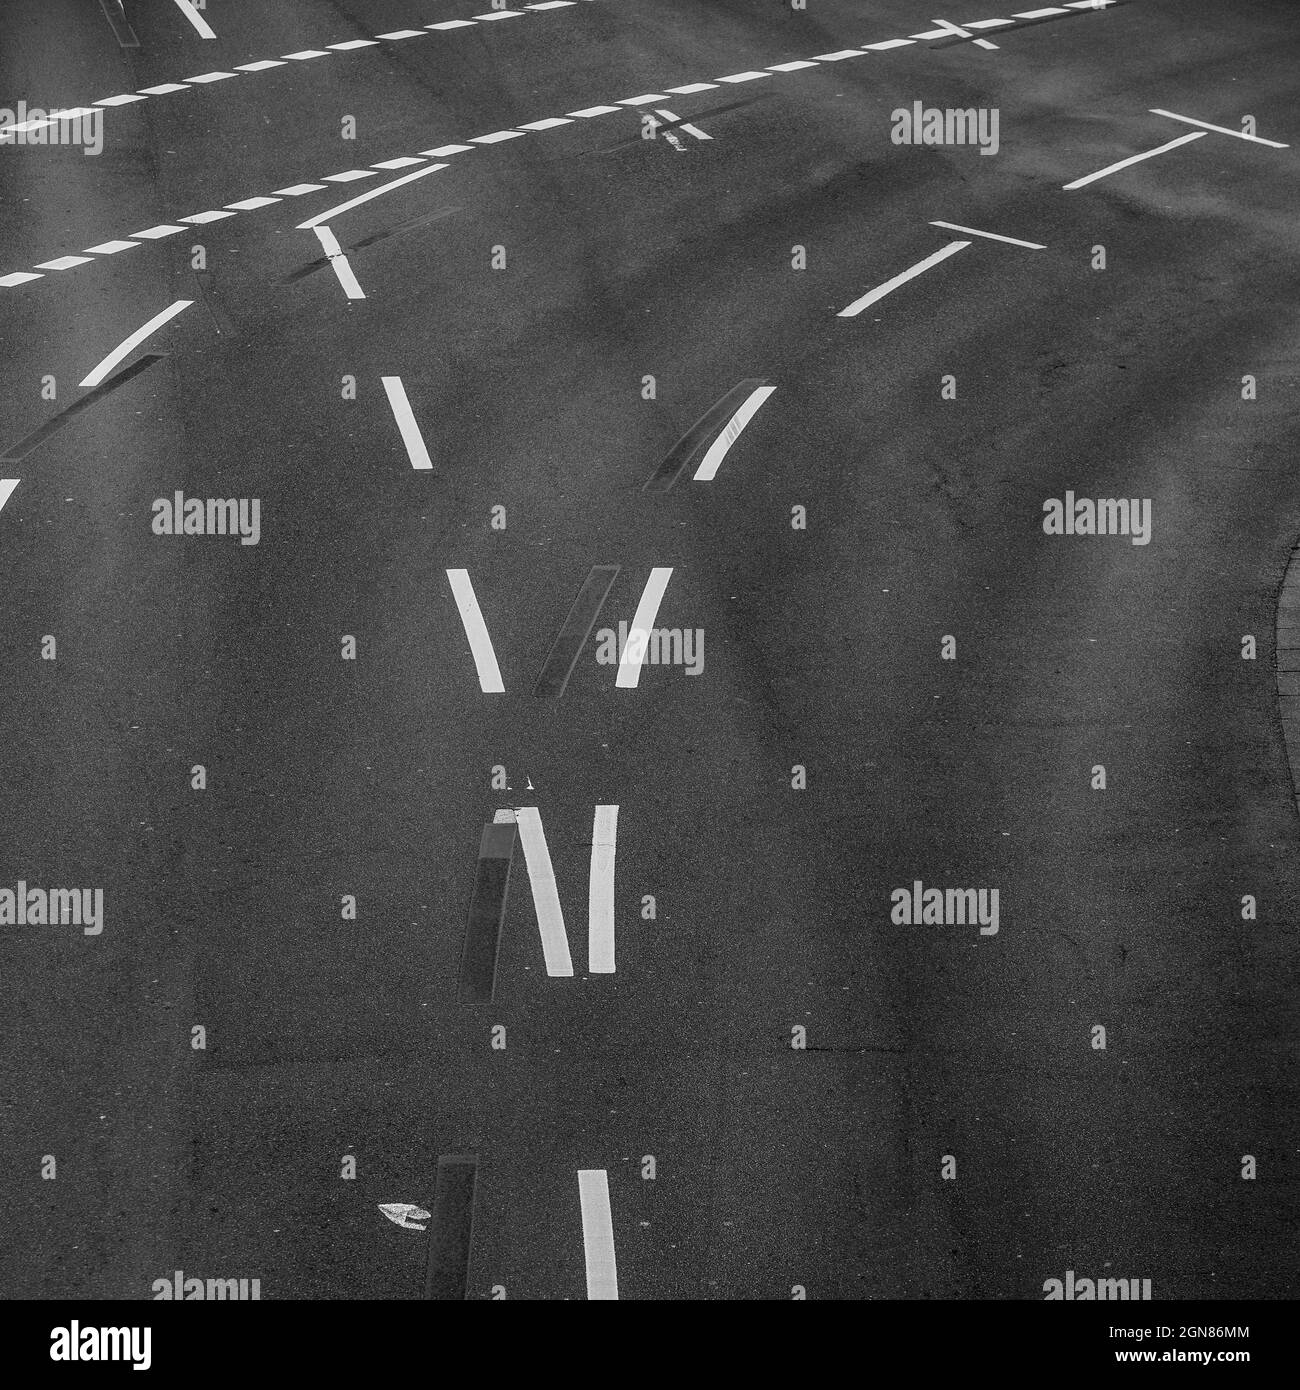 Immagine in scala di grigi delle linee stradali e delle curve per il traffico Foto Stock